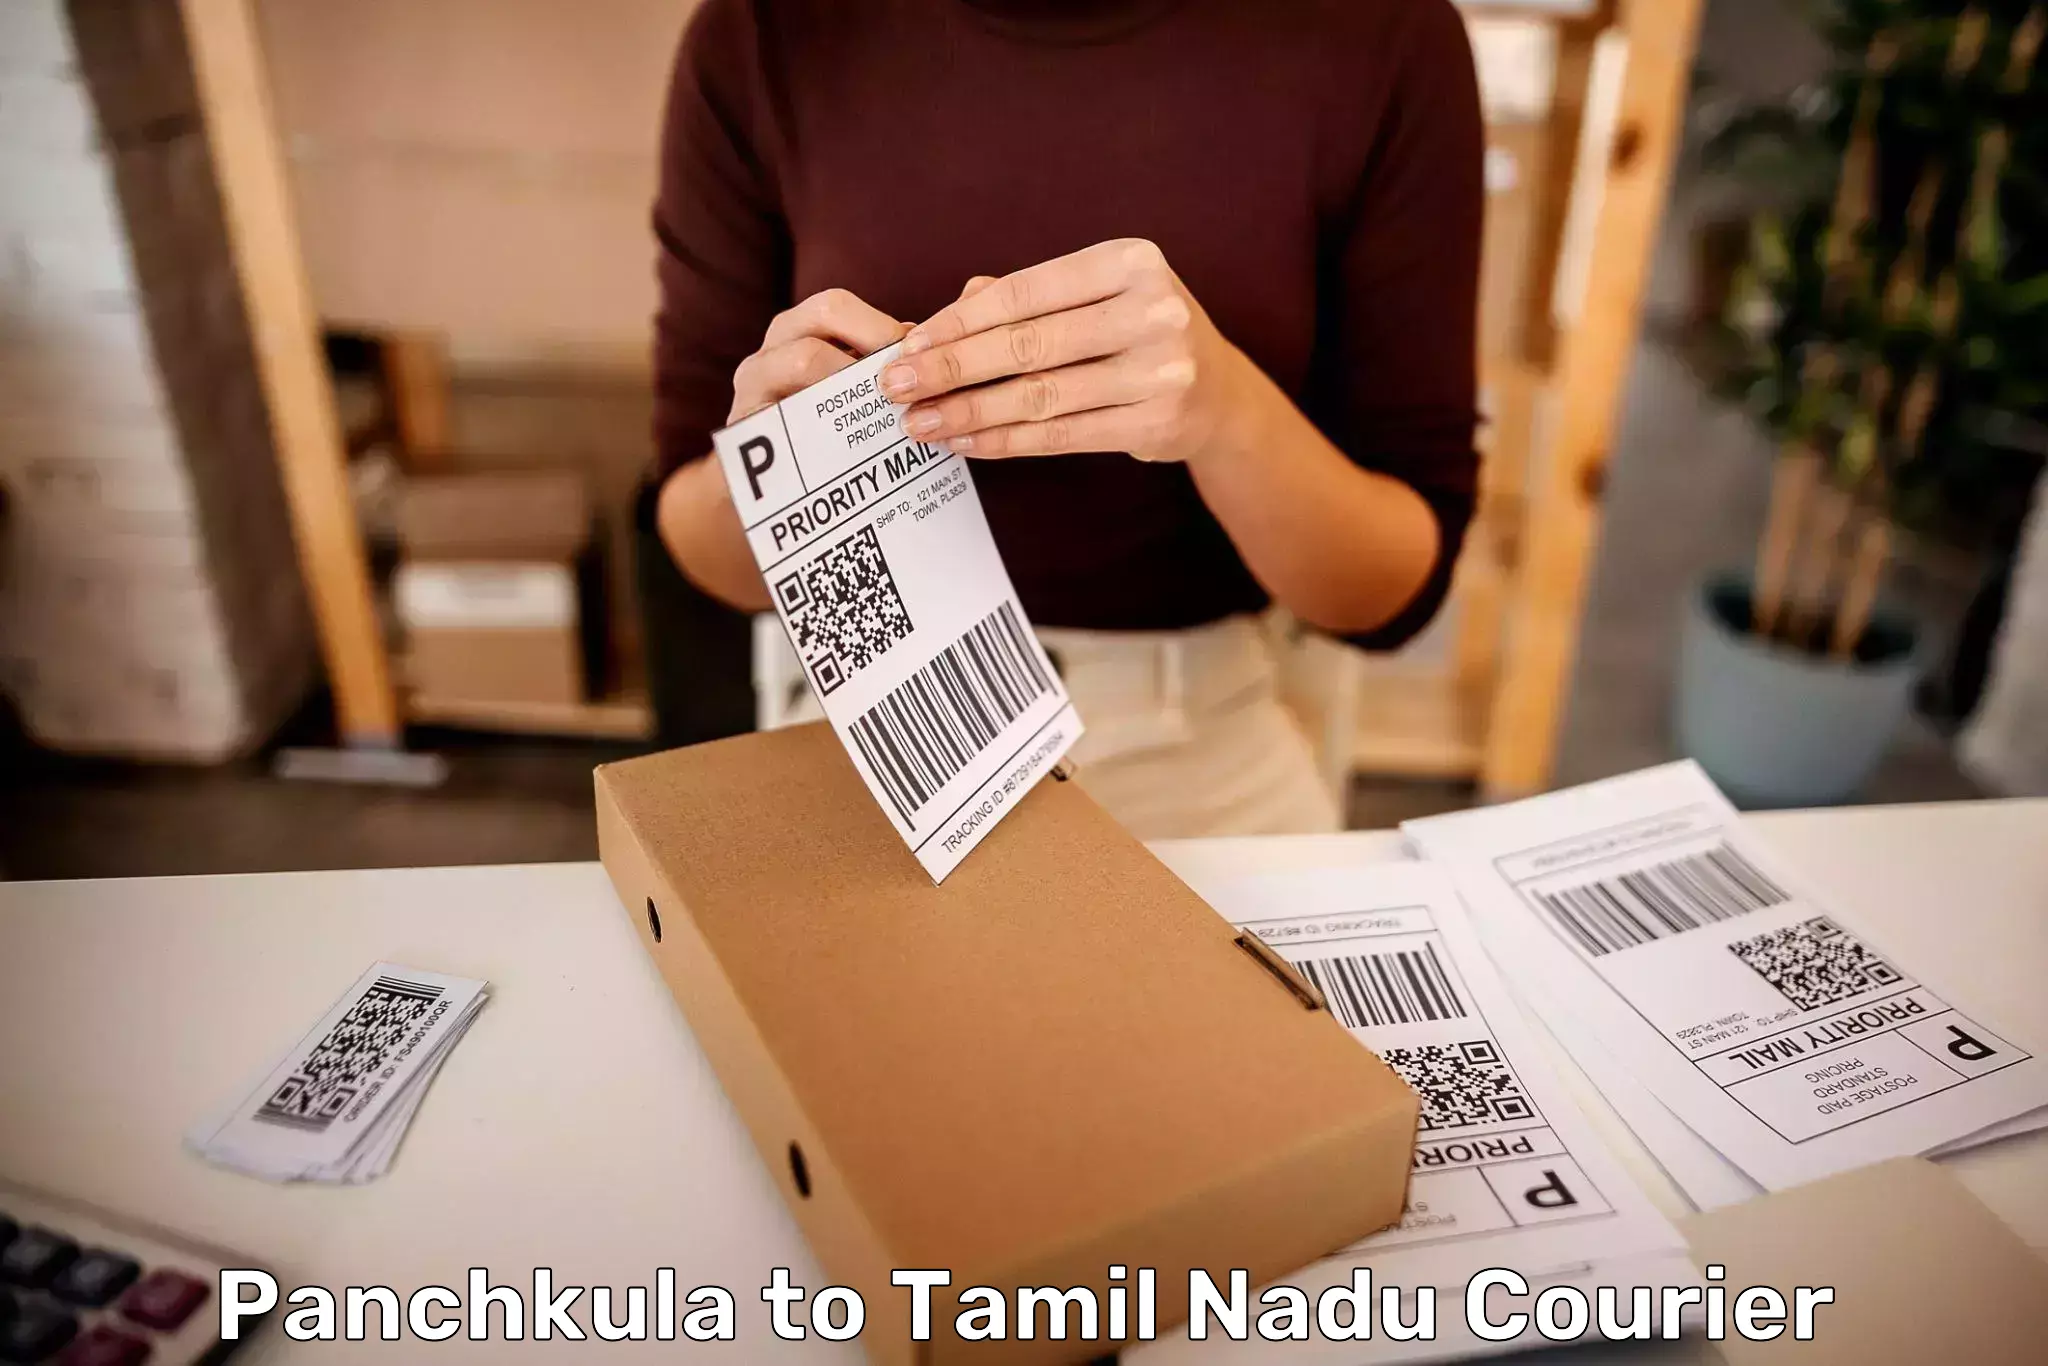 Luggage delivery app Panchkula to Tiruturaipundi